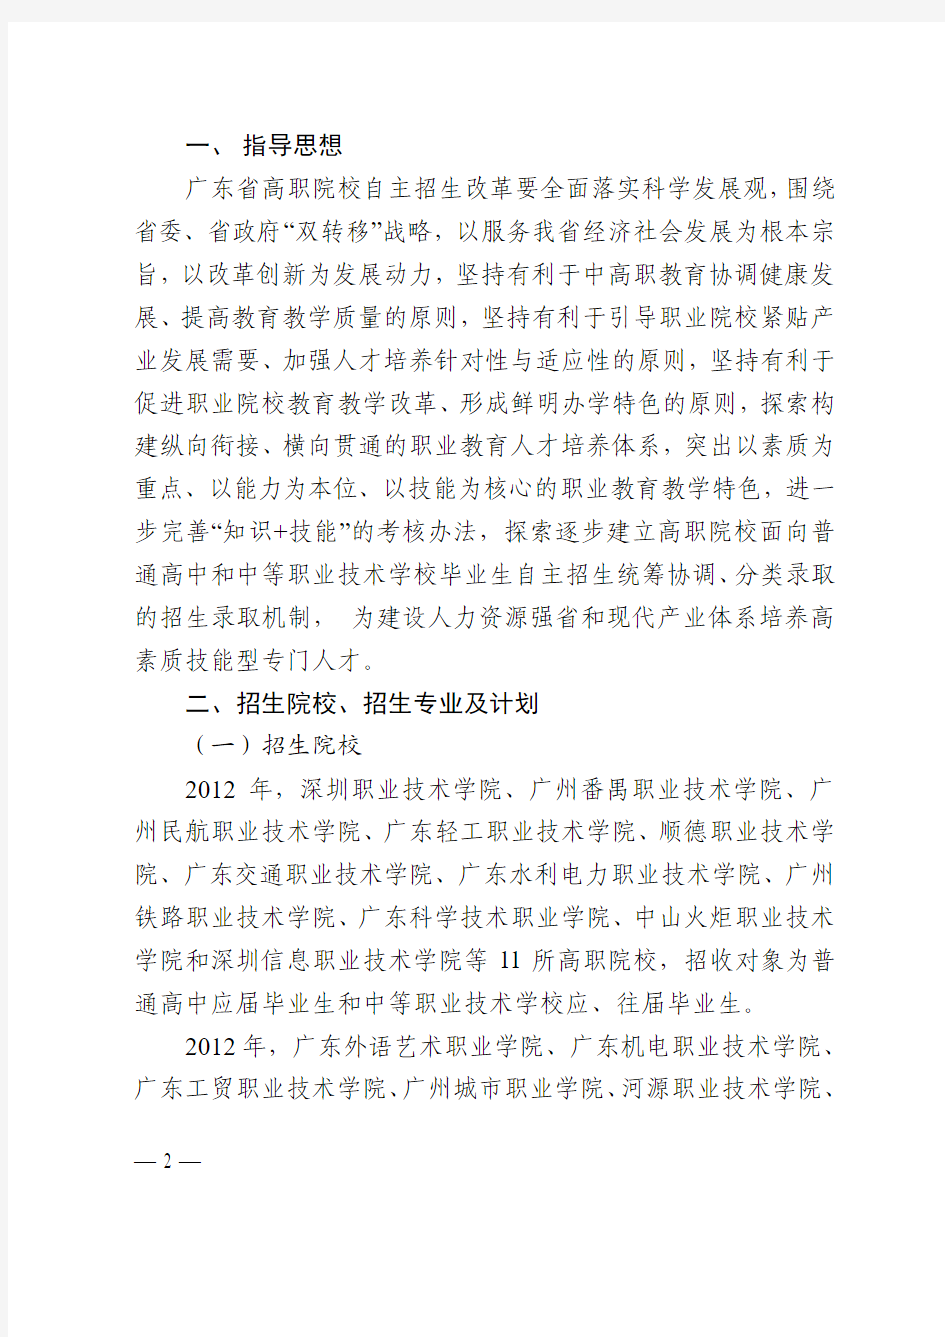 2012年广东高职院自主招生粤教考函2号文件